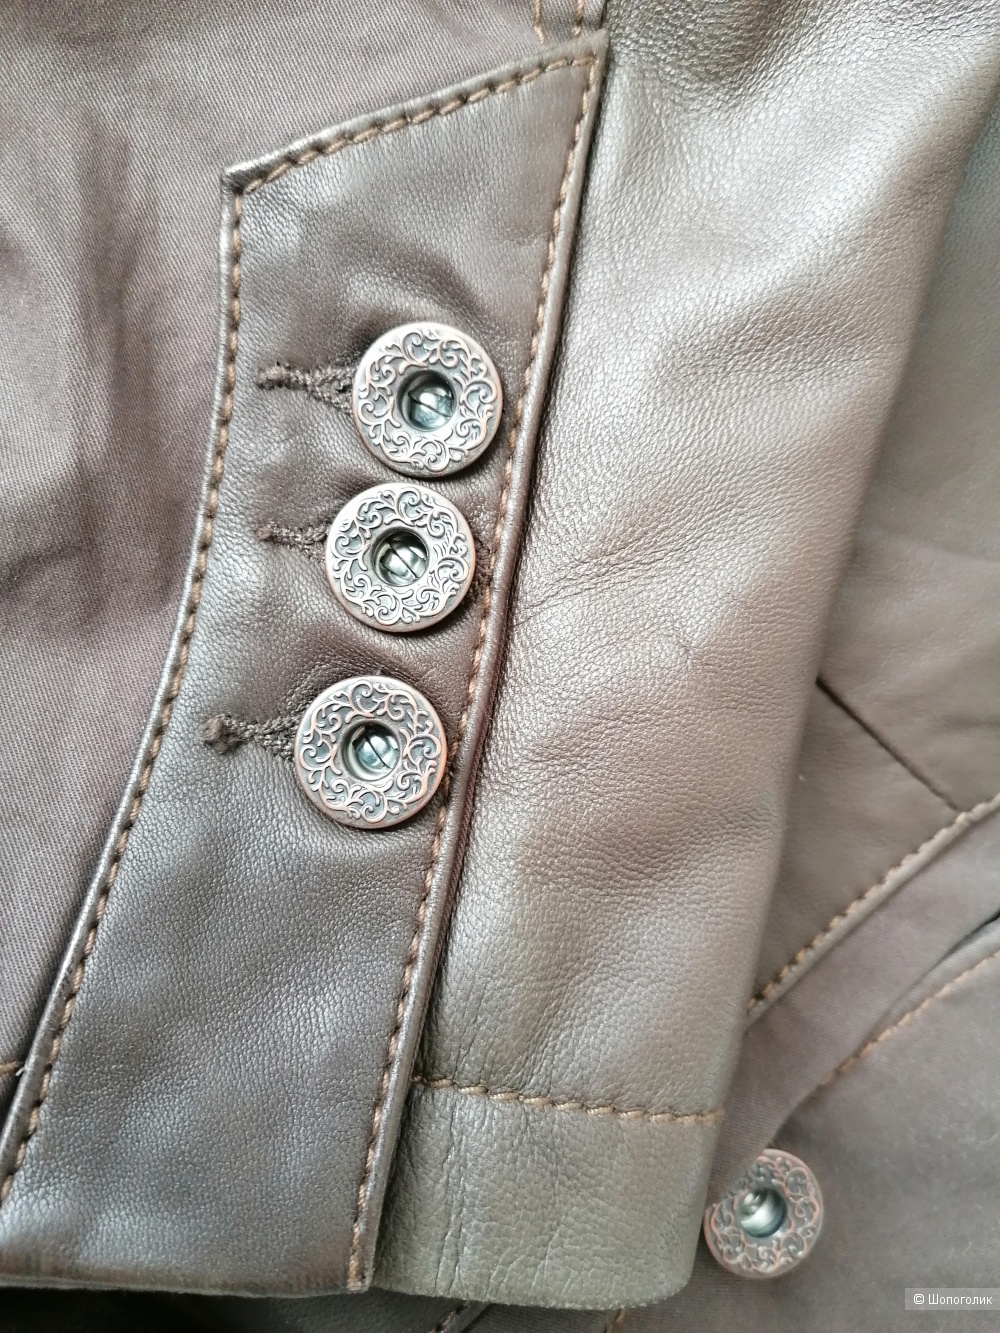 Куртка пиджак кожа Bianca 44-46 размера